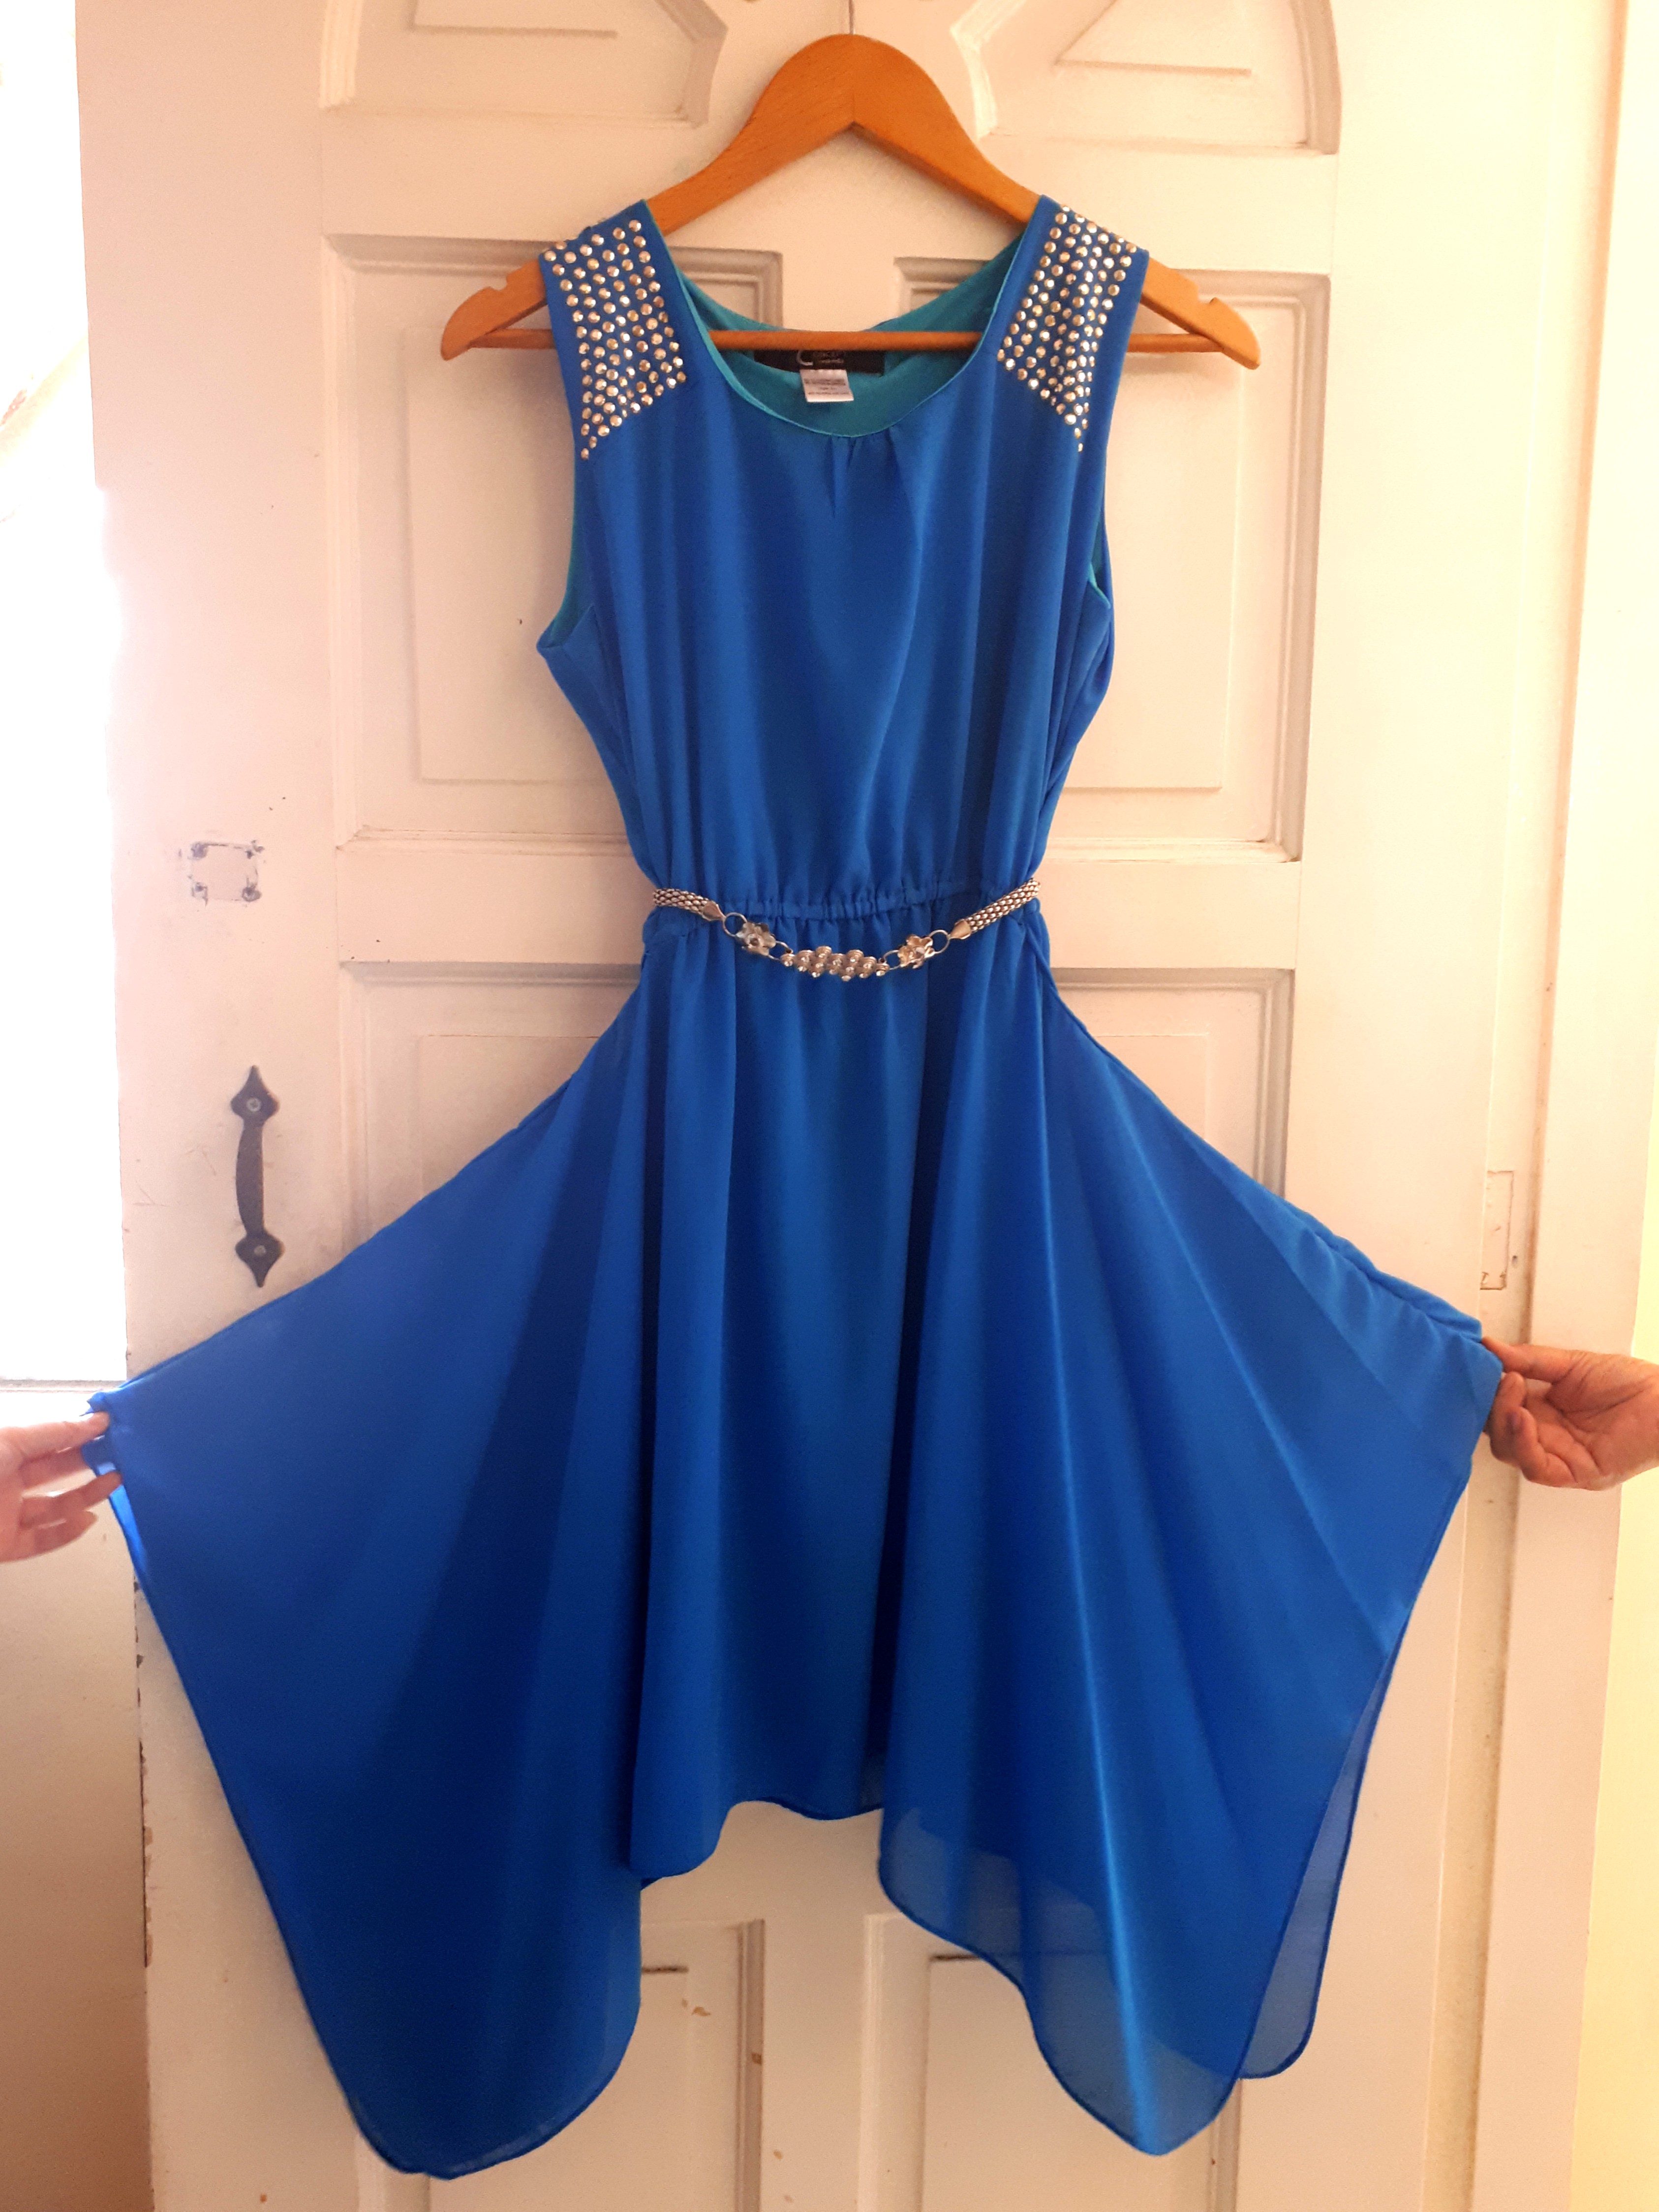 royal blue chiffon dress